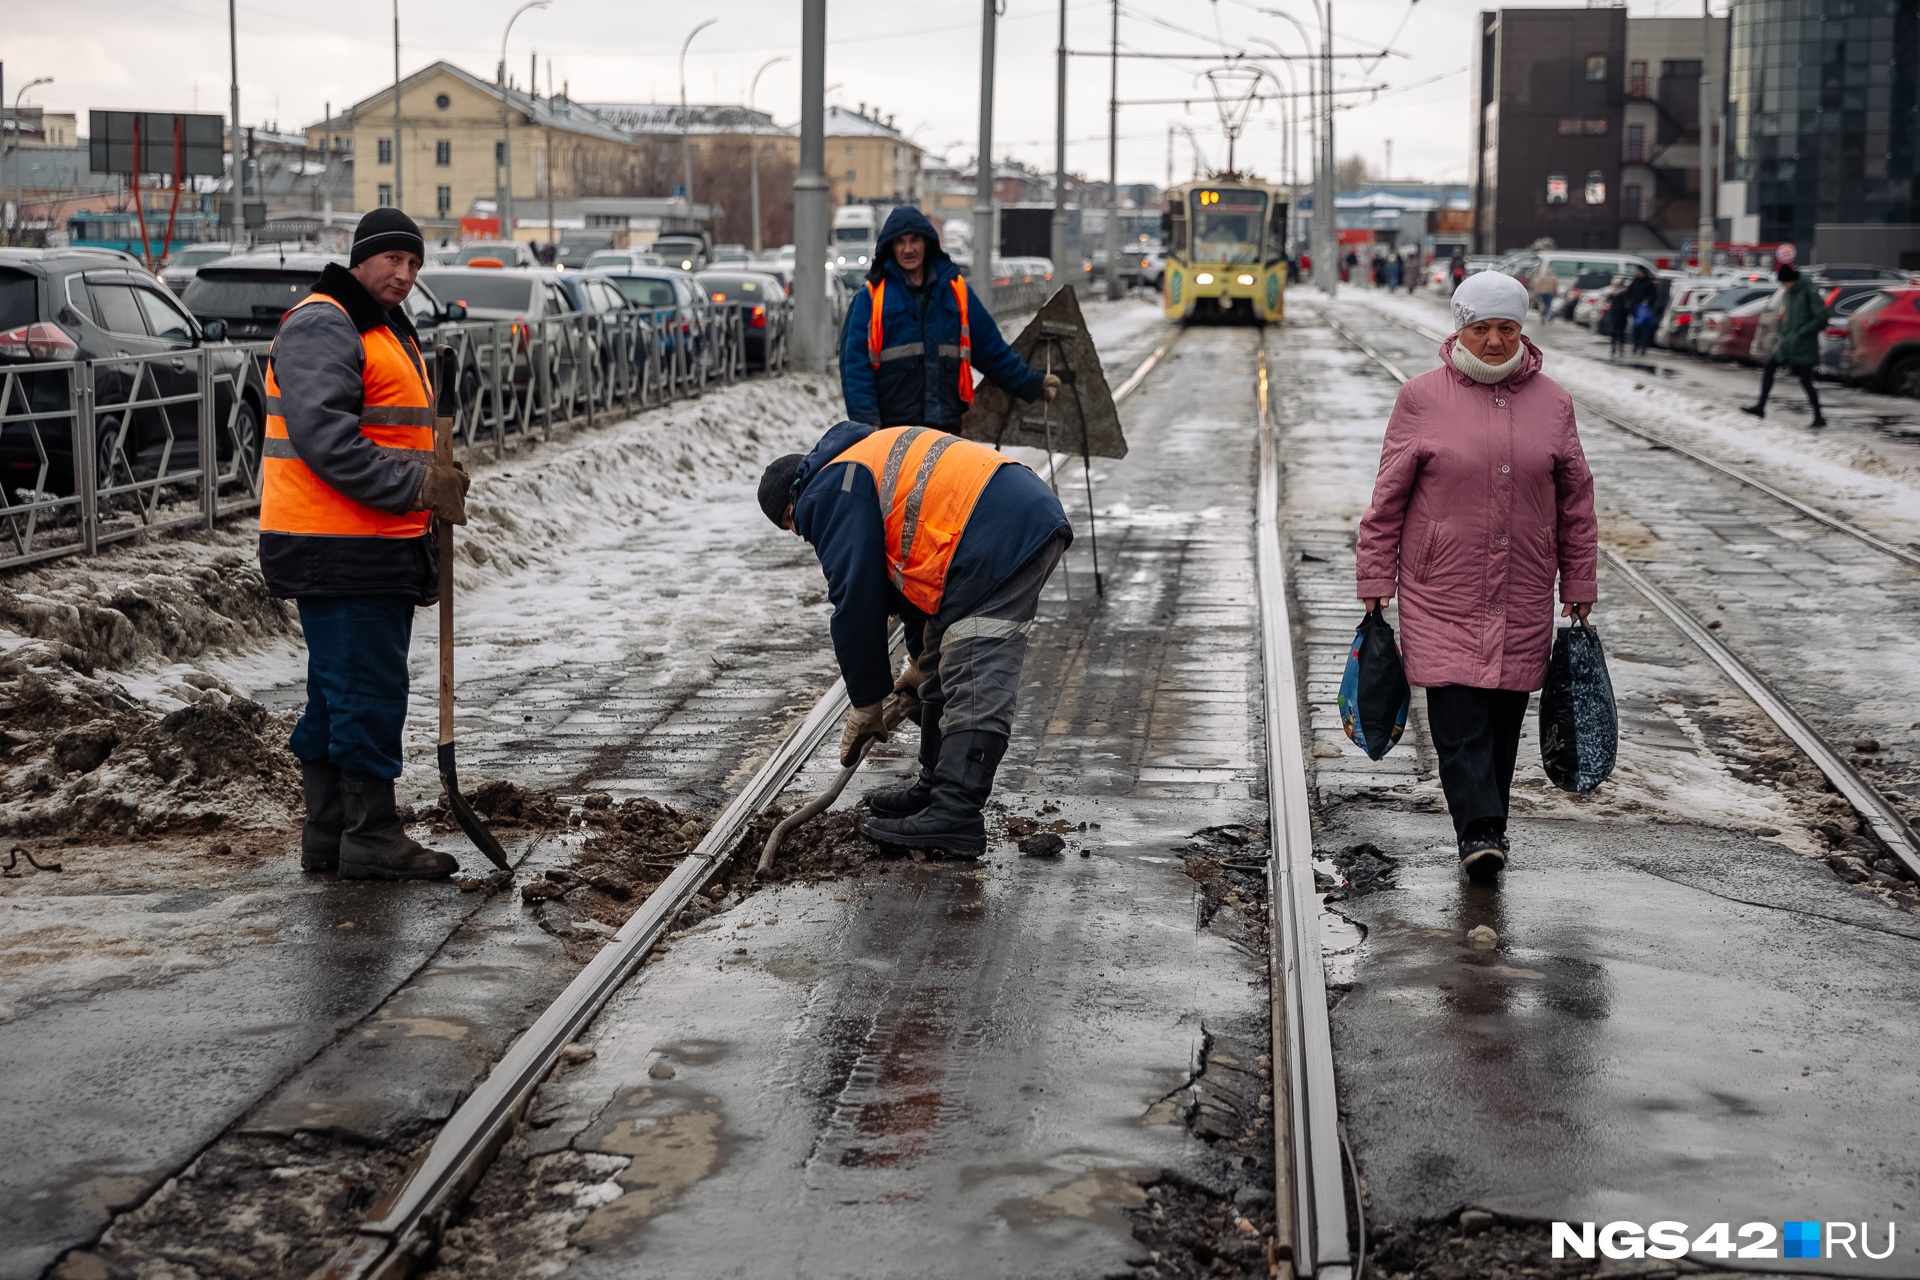 Ремонт трамвайных путей в центре Новокузнецка обойдется в 100 млн рублей. Работы начнут с 1 мая